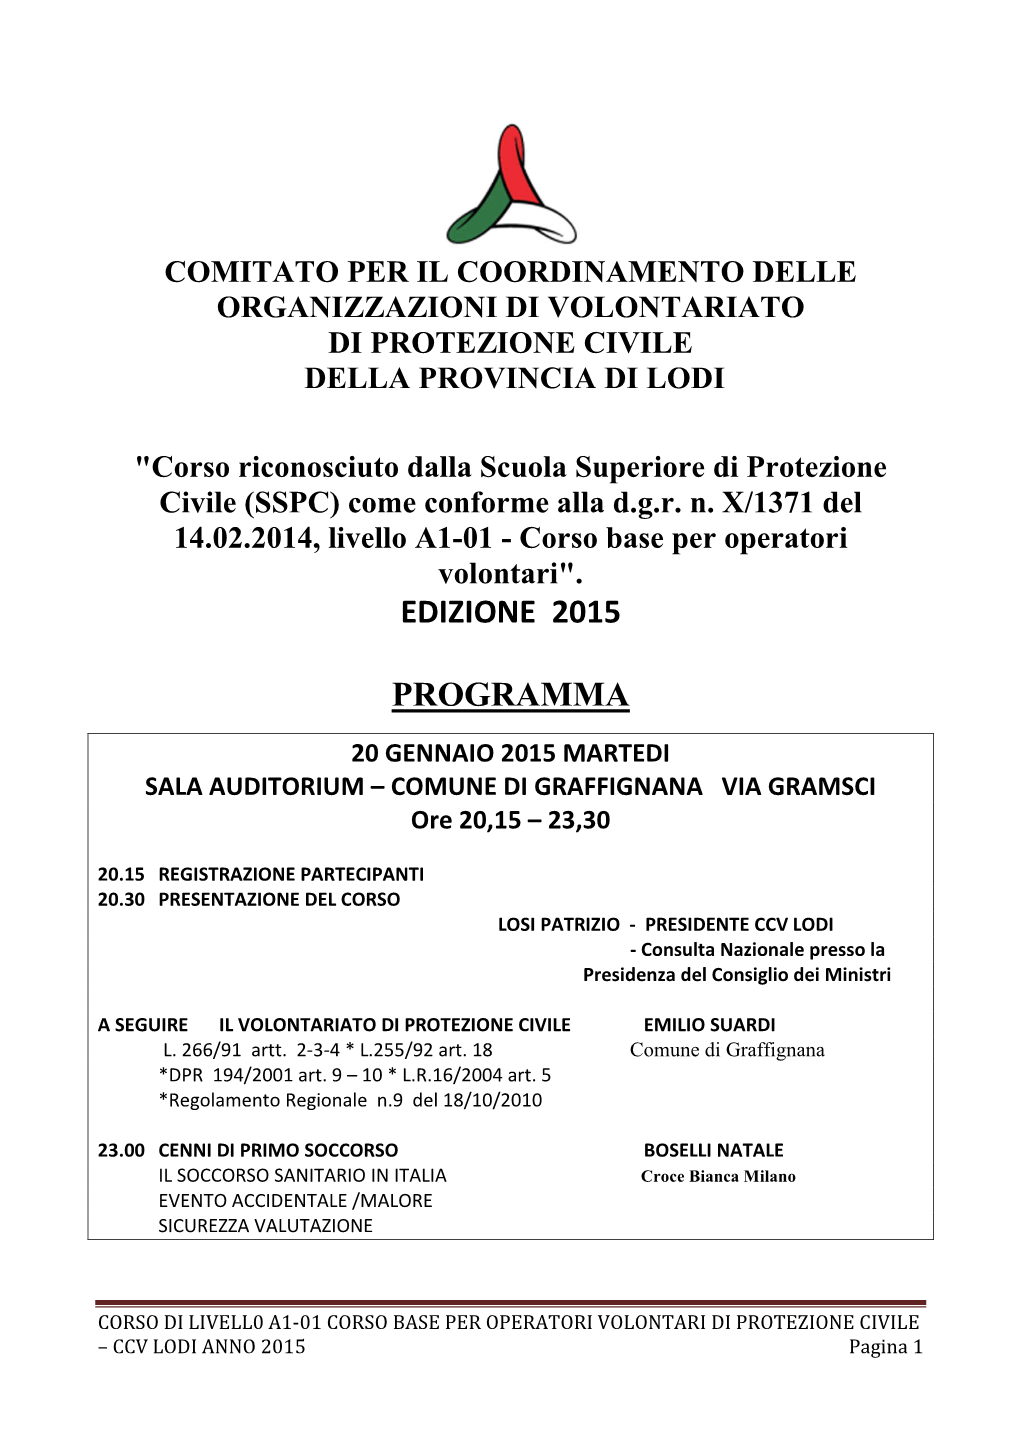 Corso Di Livello A1 2015 PROGRAMMA Docx